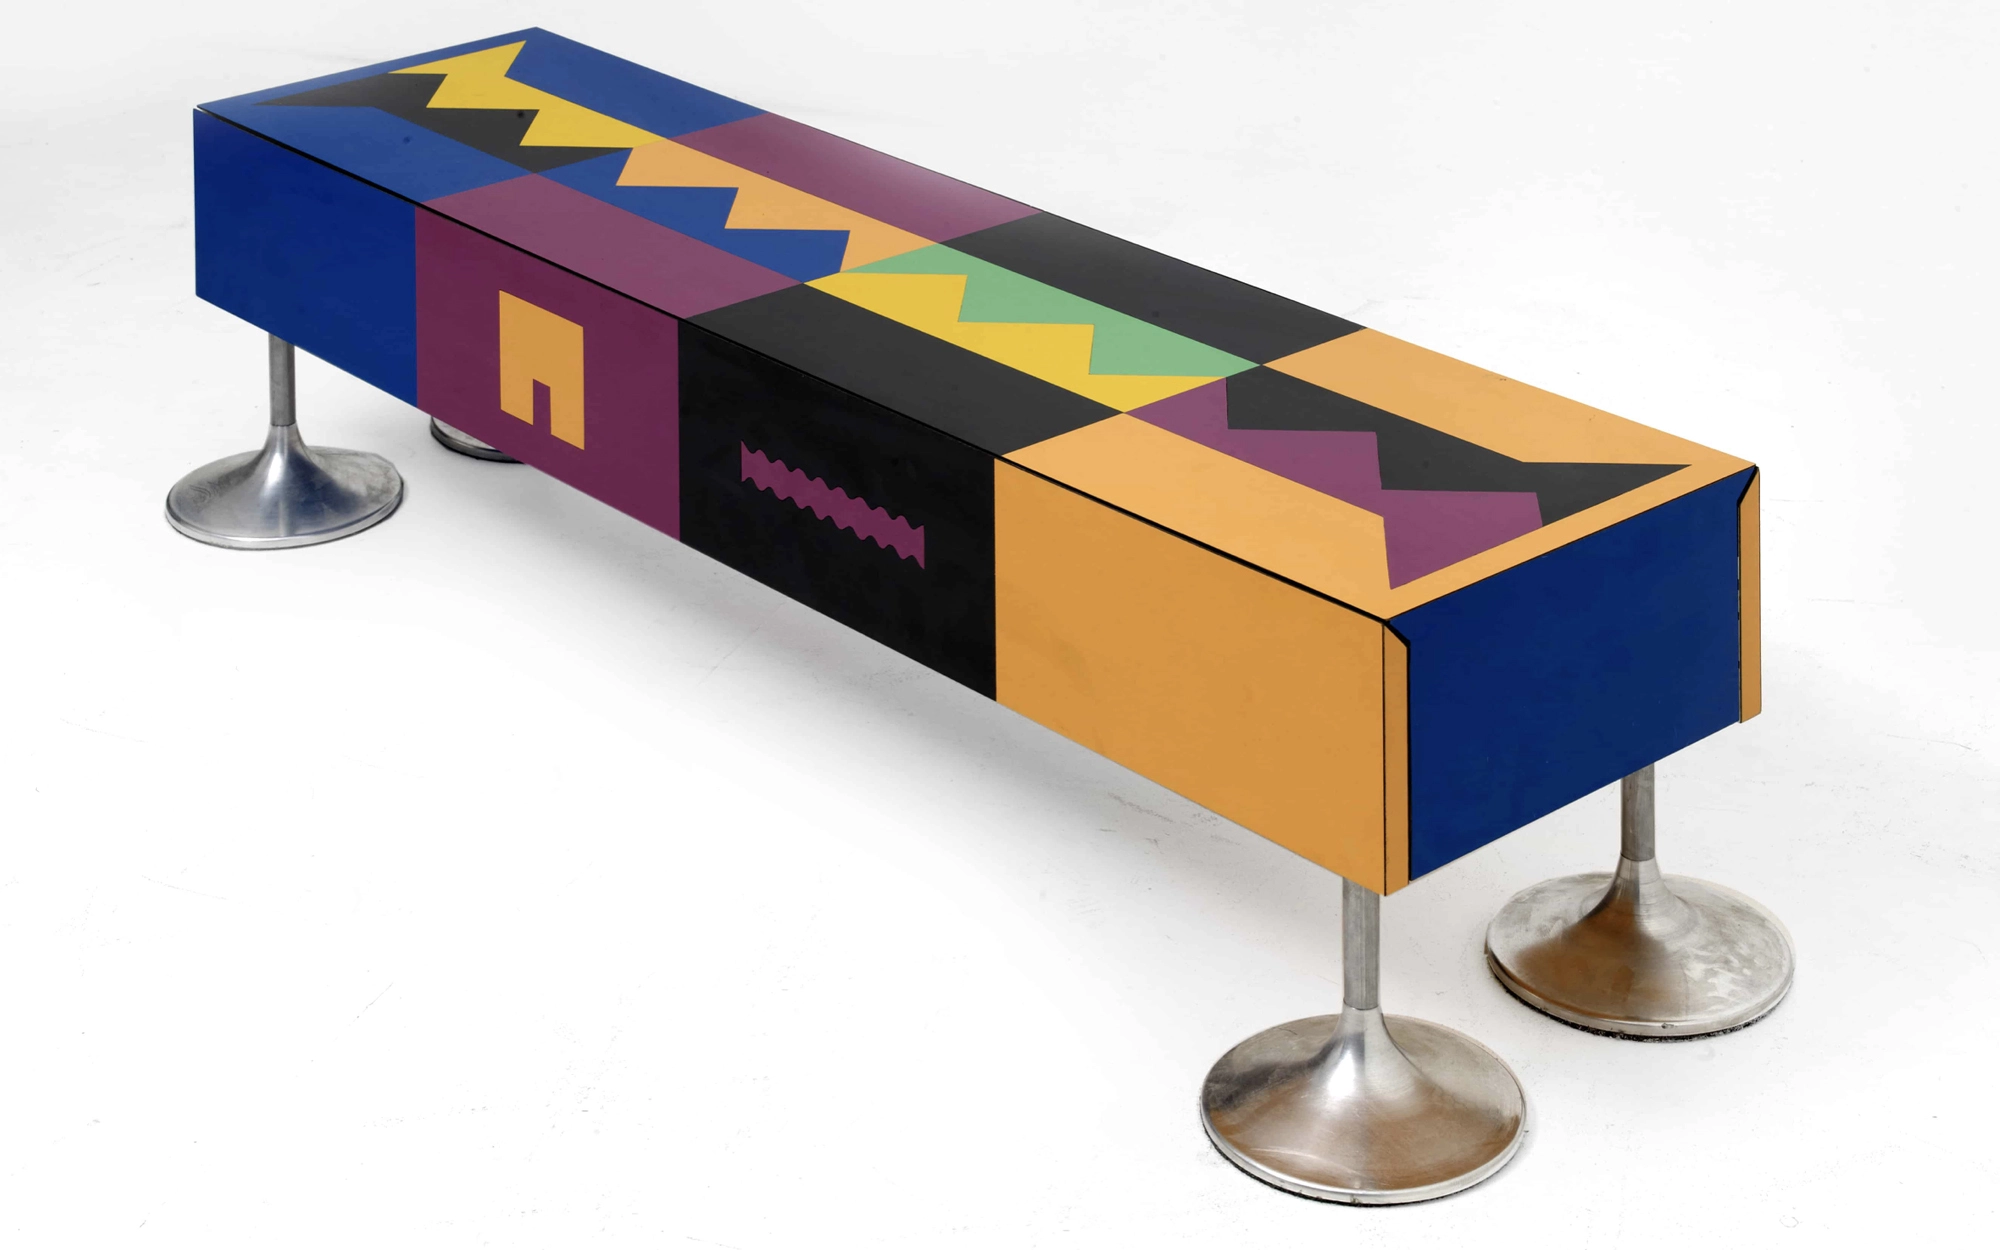 Ollo coffee table - Alessandro and Giorgio Mendini and Gregori - Coffee table - Galerie kreo